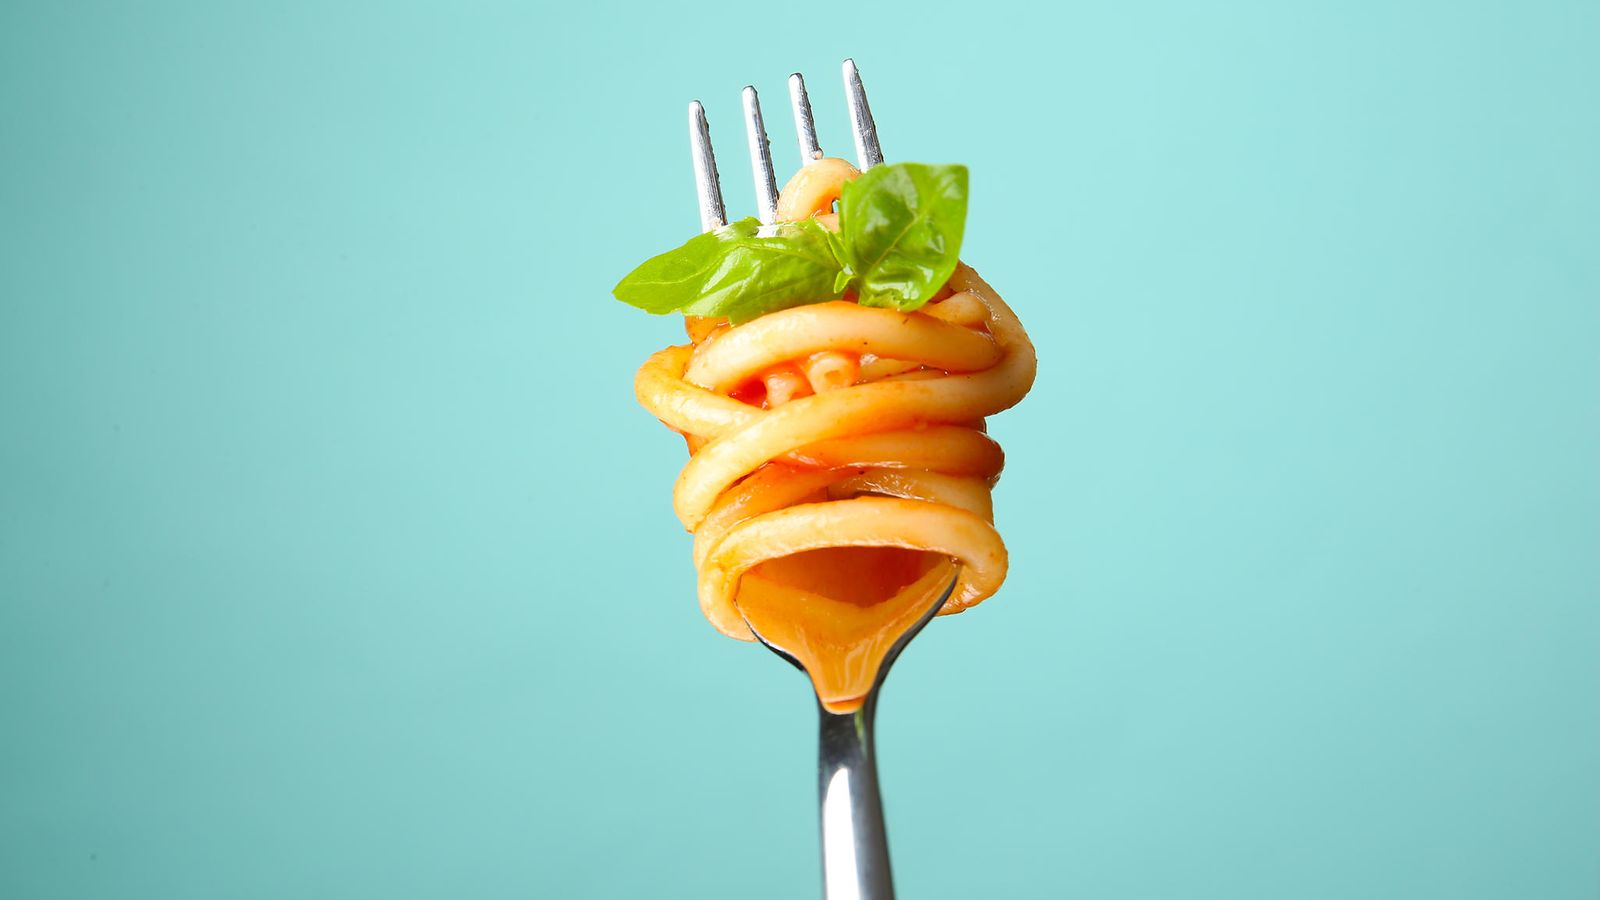 haarukka pasta